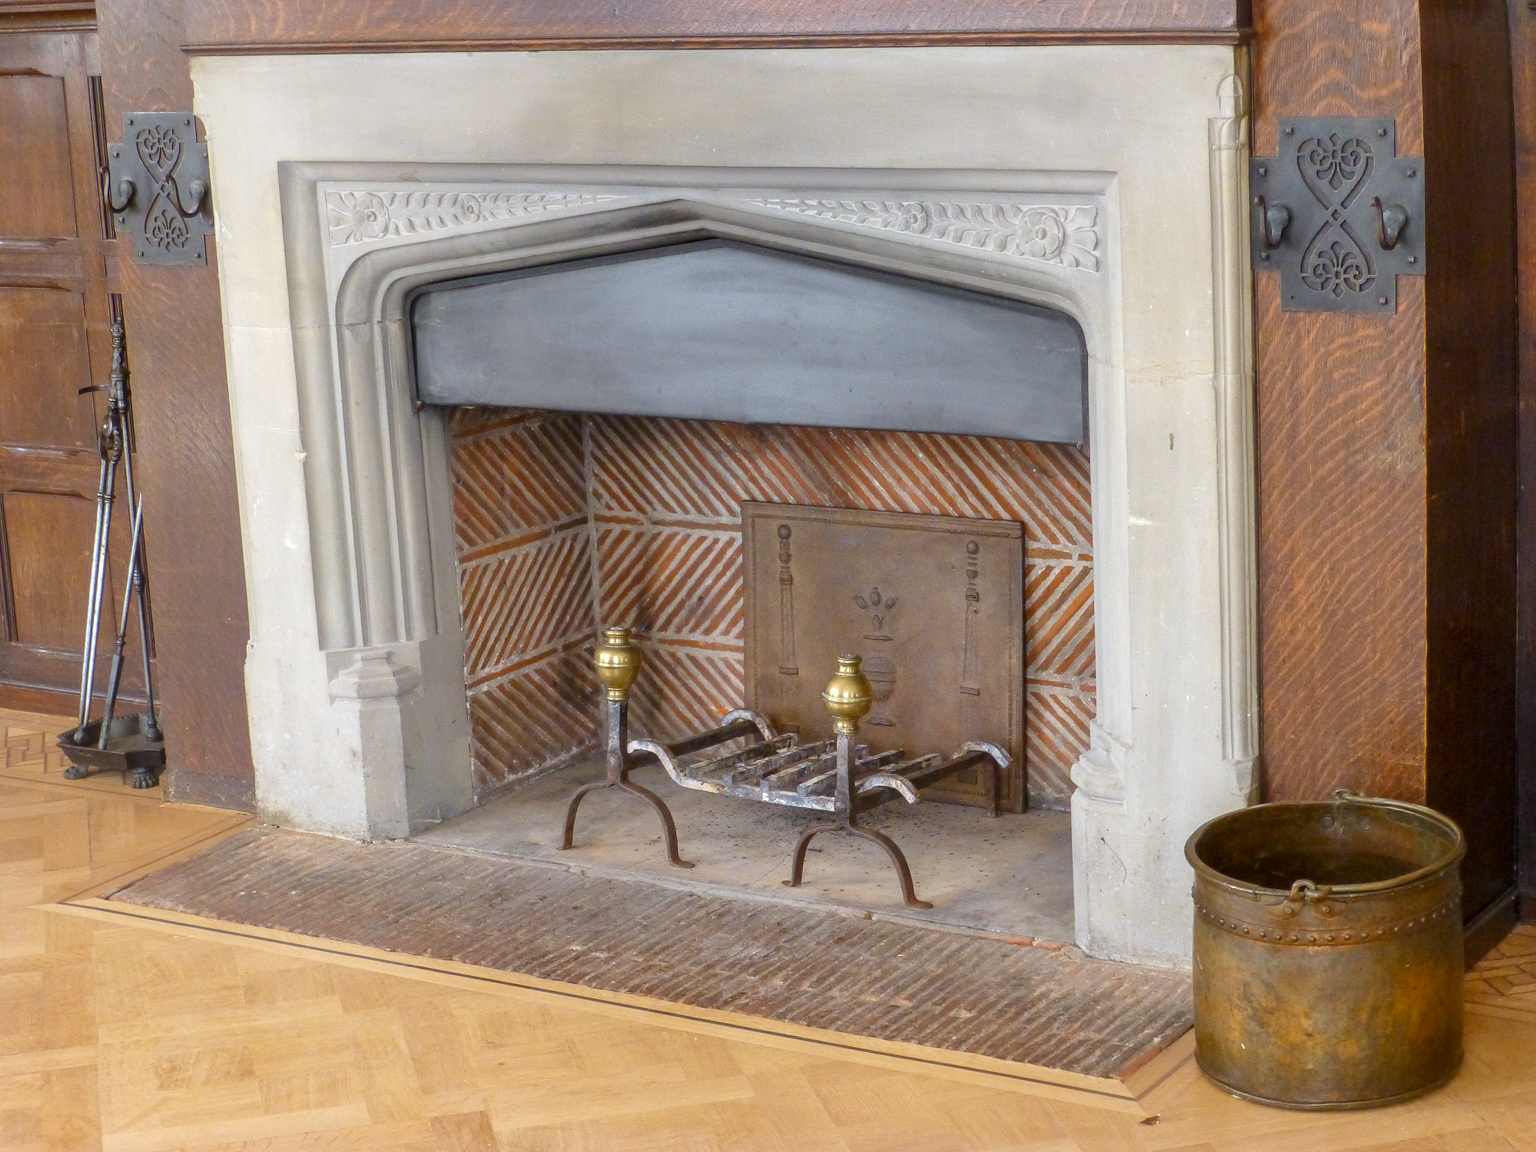 le foyer non utilisé, decoré avec des accessoires de cheminée